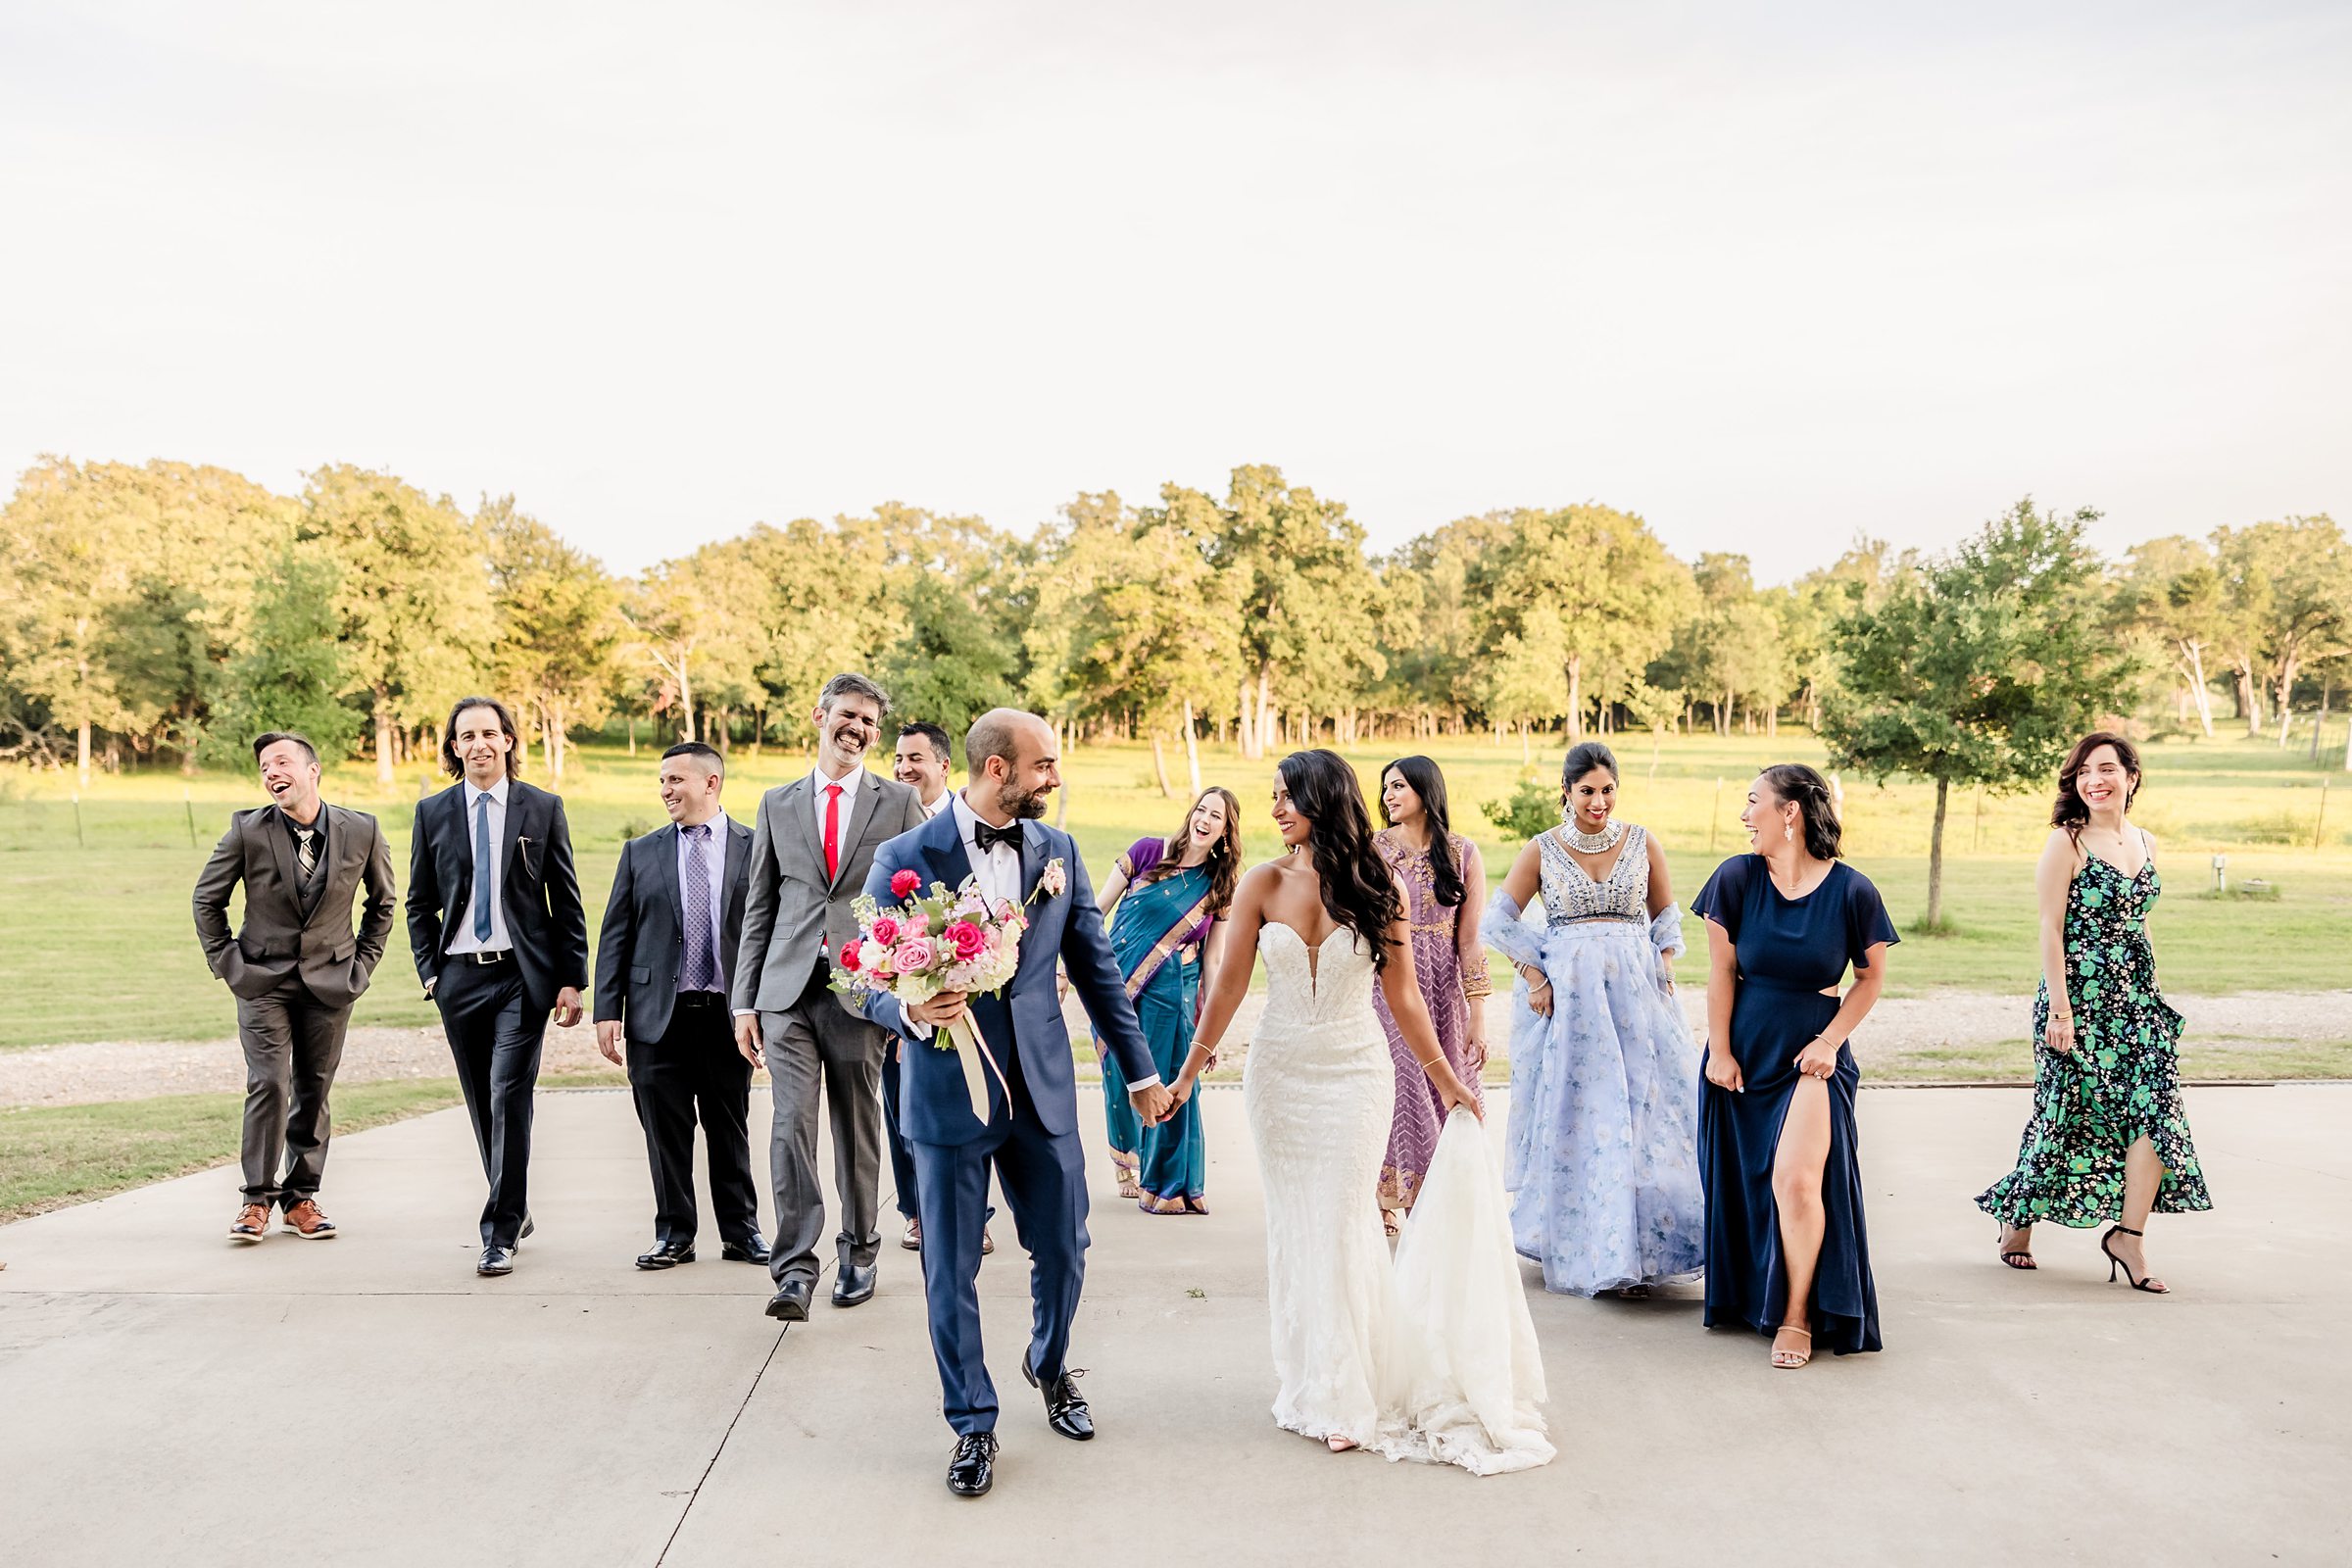 Bridal Party walk during a wedding at Shiraz Garden in Bastrop, Texas.